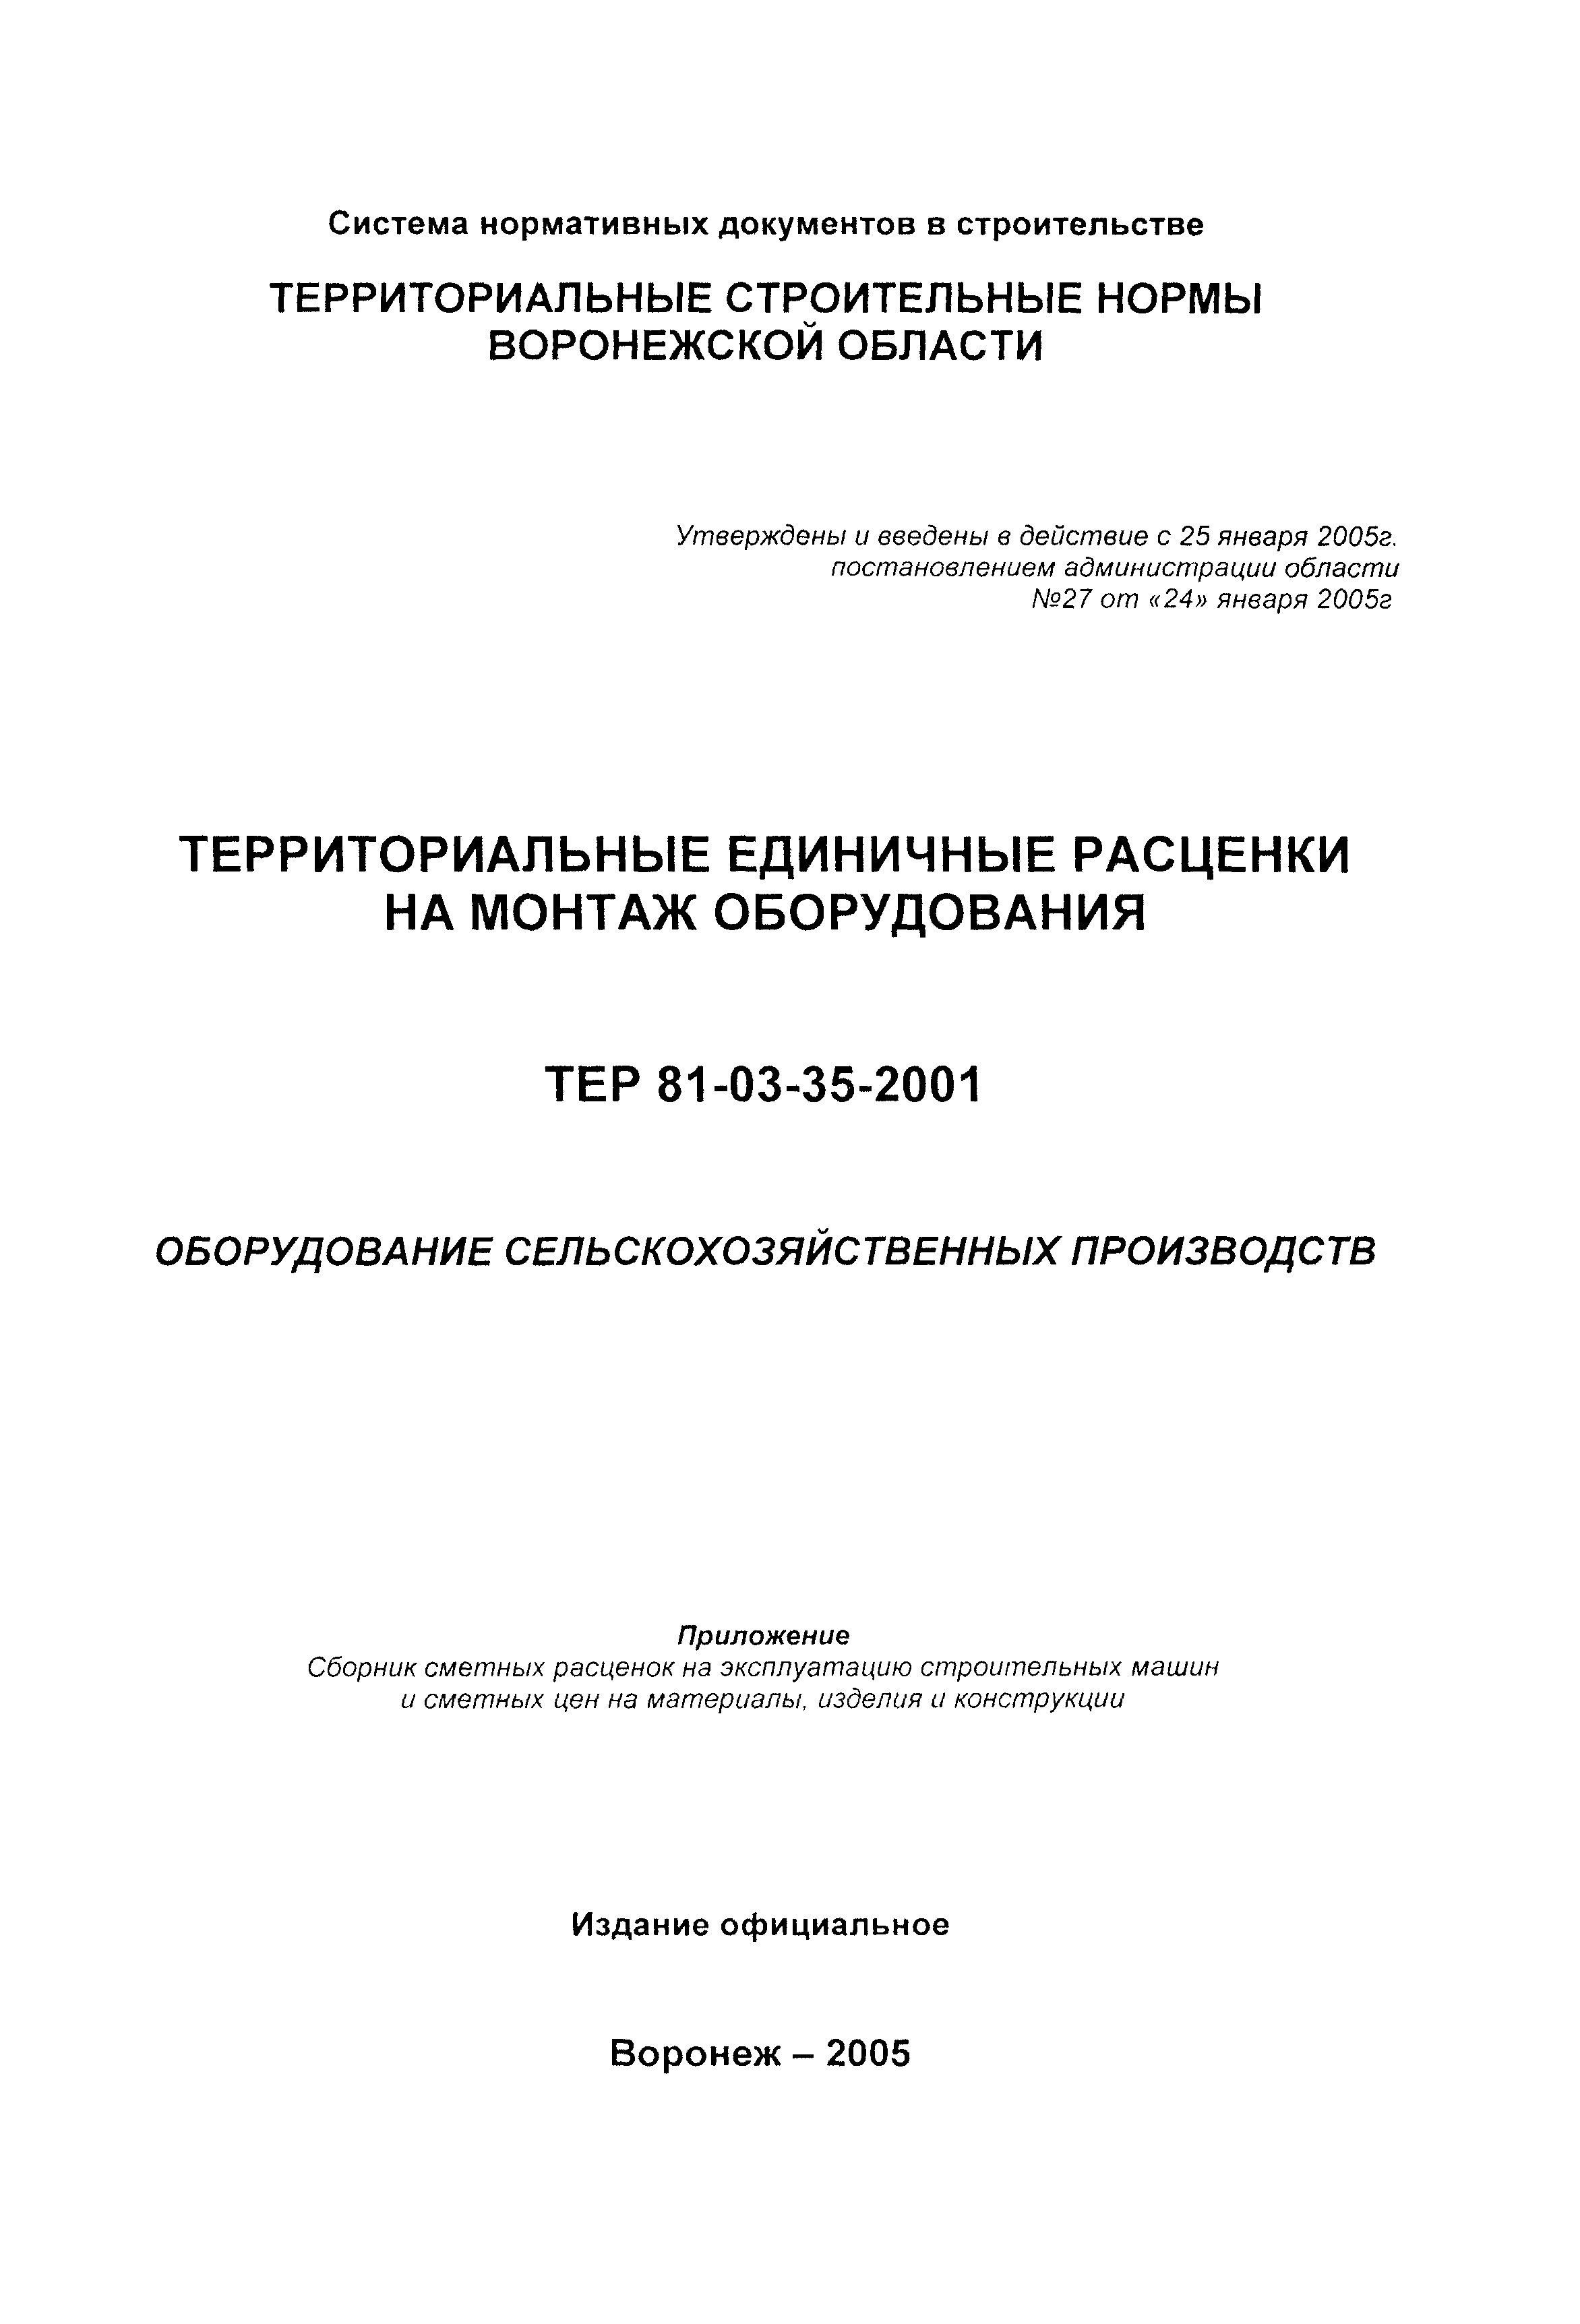 ТЕРм Воронежская область 81-03-35-2001